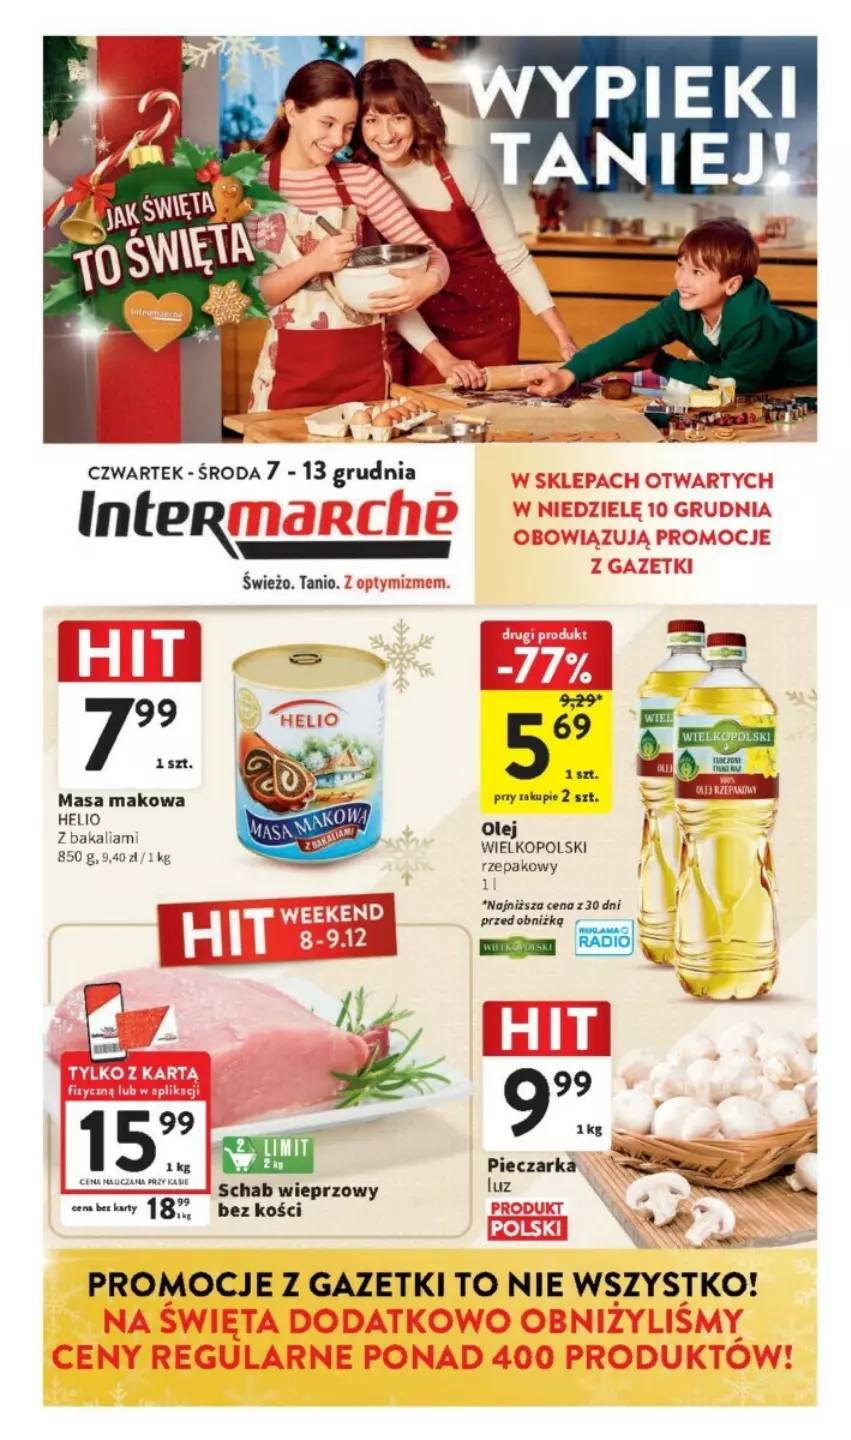 Gazetka promocyjna Intermarche - ważna 07.12 do 13.12.2023 - strona 1 - produkty: Fa, Helio, Olej, Rama, Schab wieprzowy